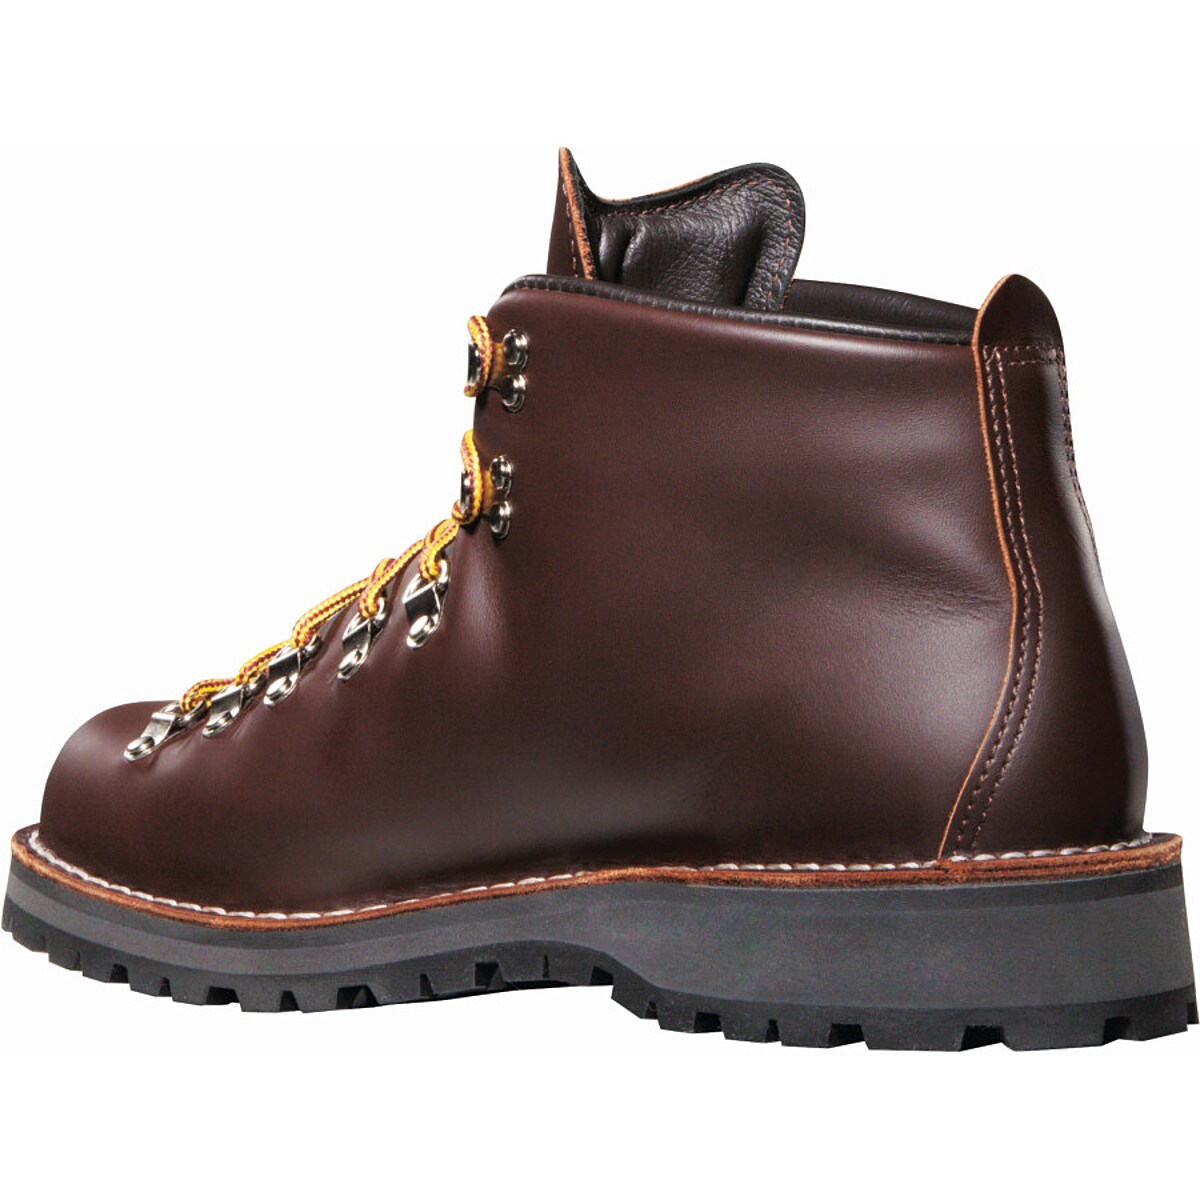 Danner Mountain Light Boot - Men's | eBay